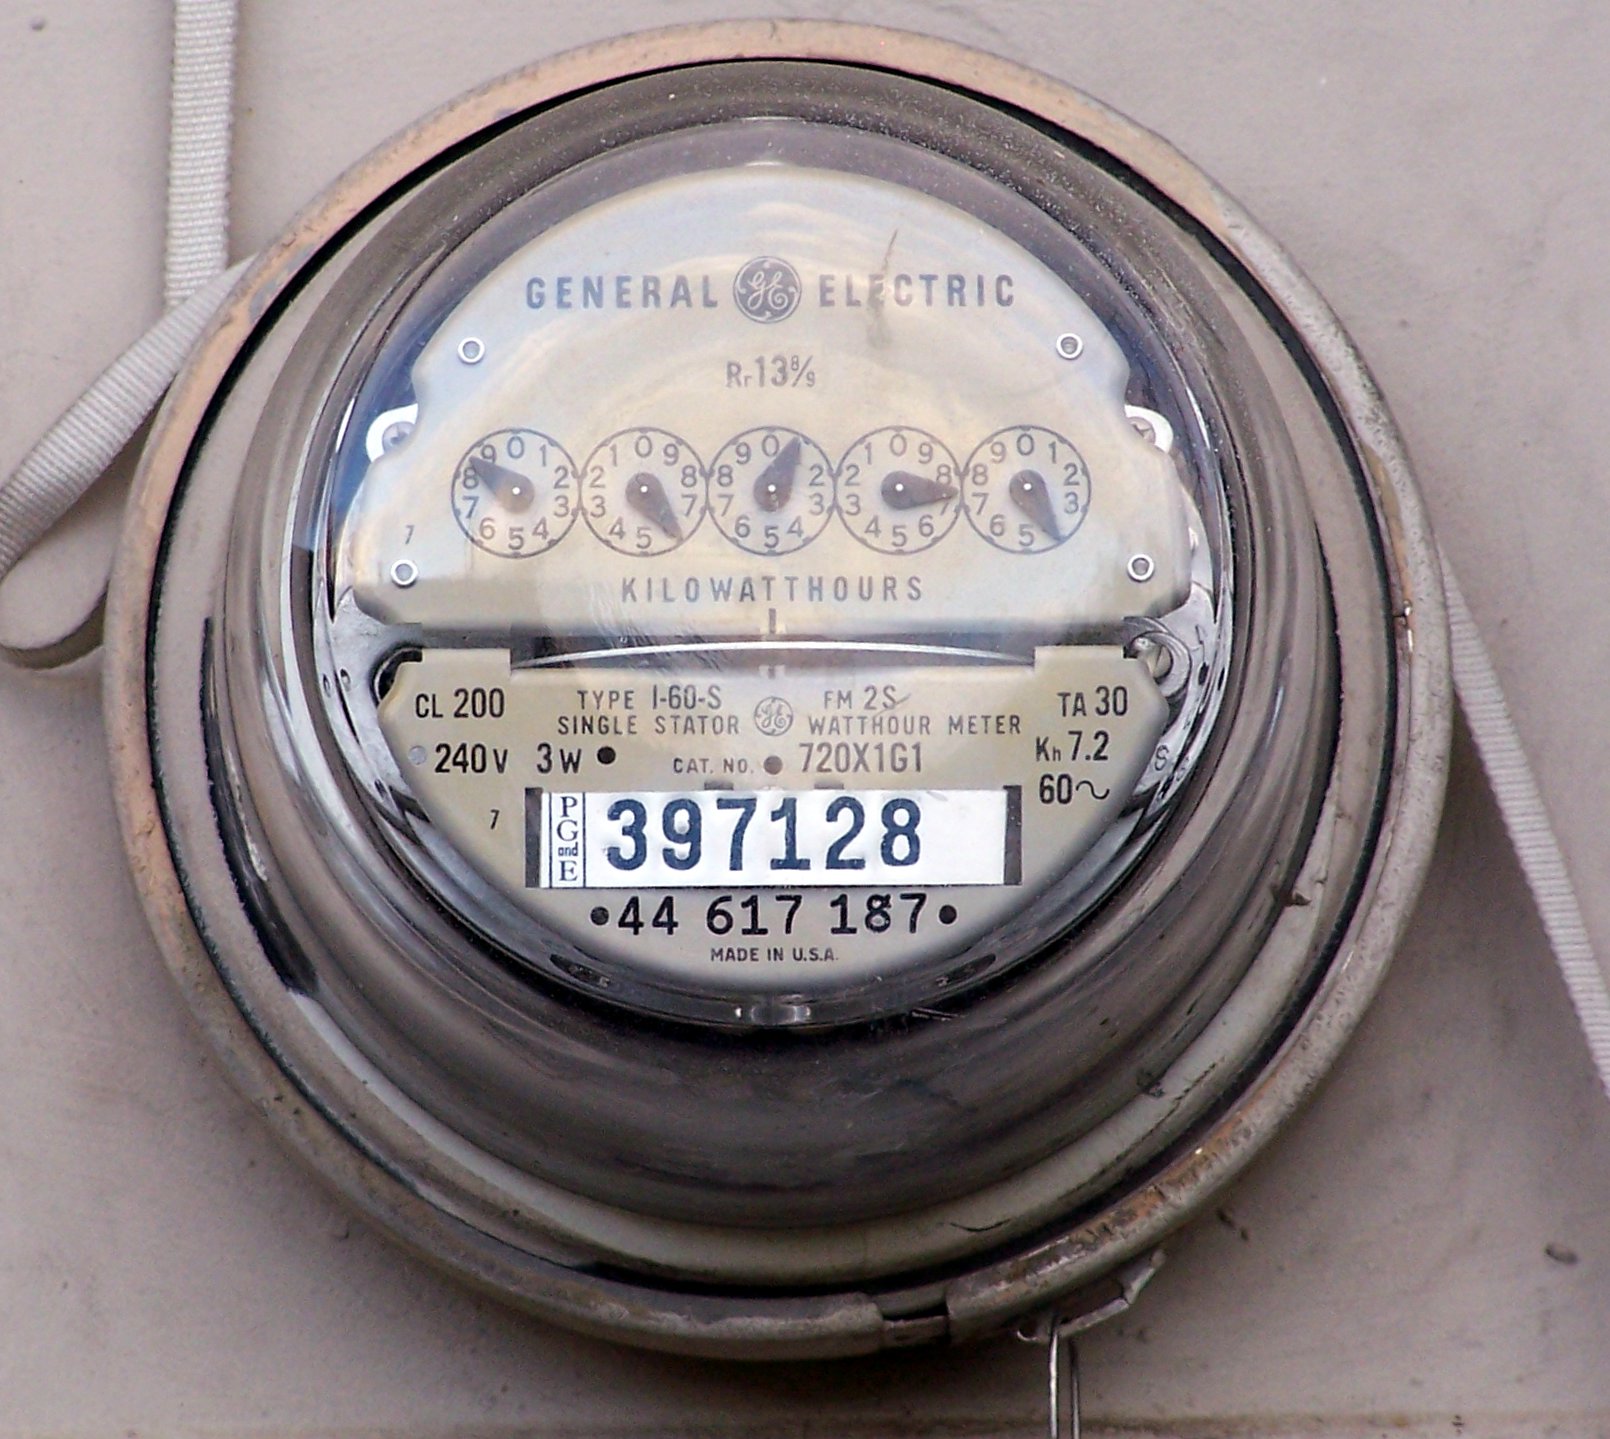 Electrical_meter.jpg (1610×1439)